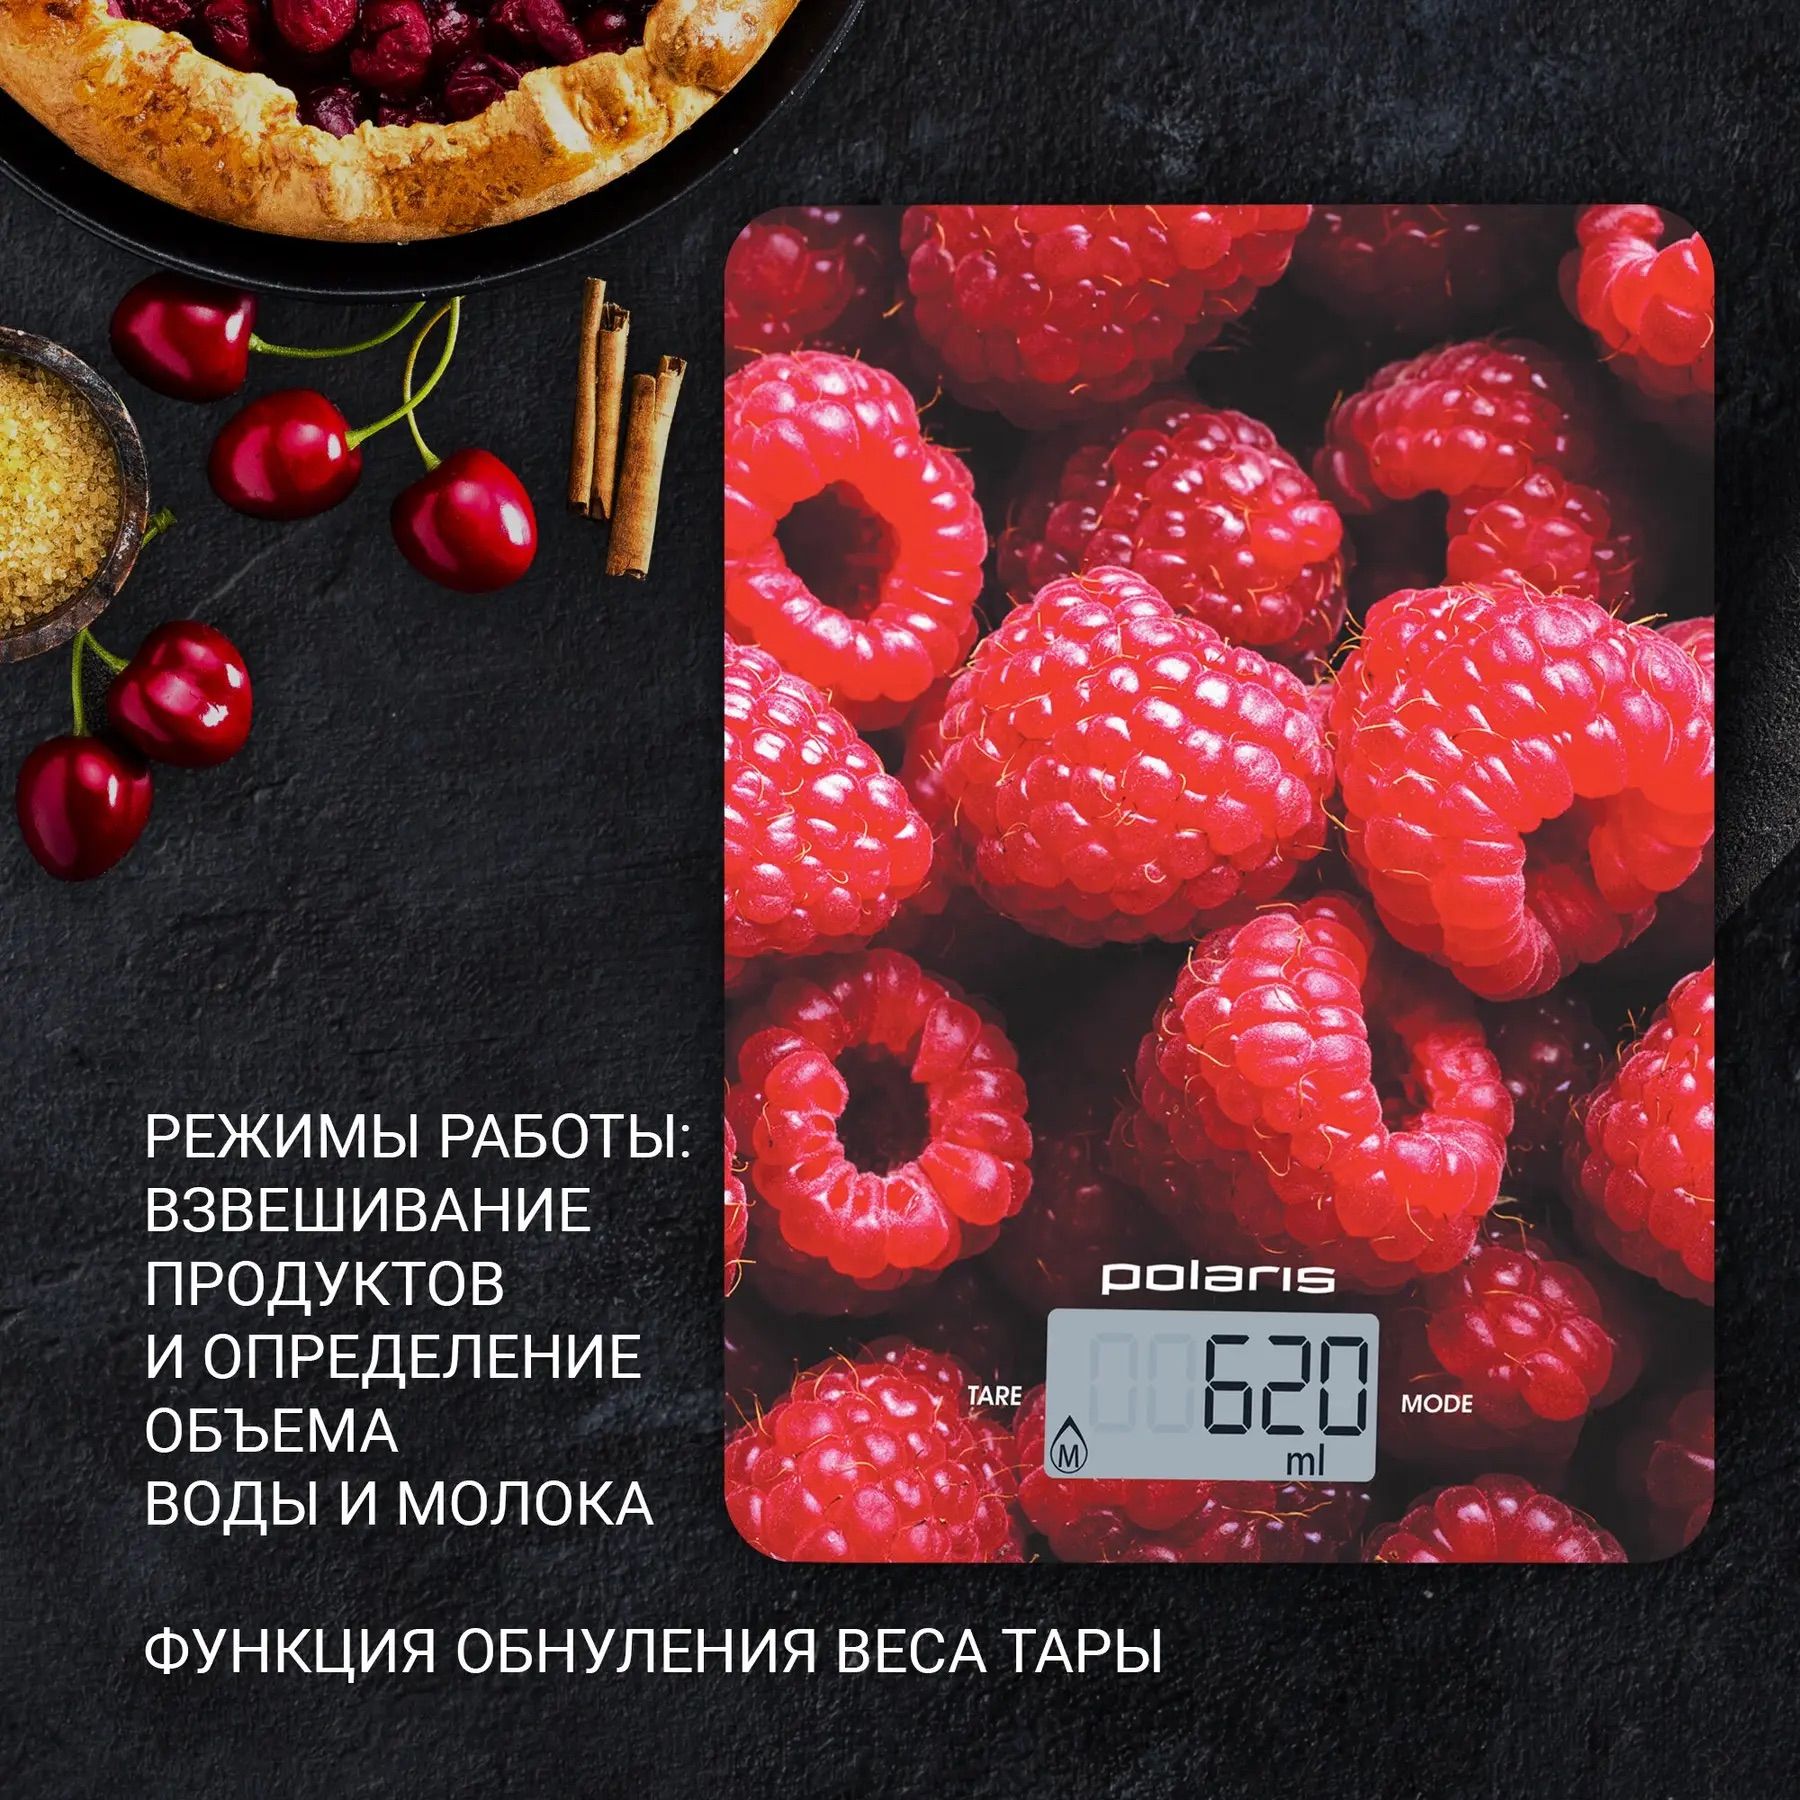 Ваги кухонні Polaris PKS 1068 DG Raspberry 10 кг - фото 2